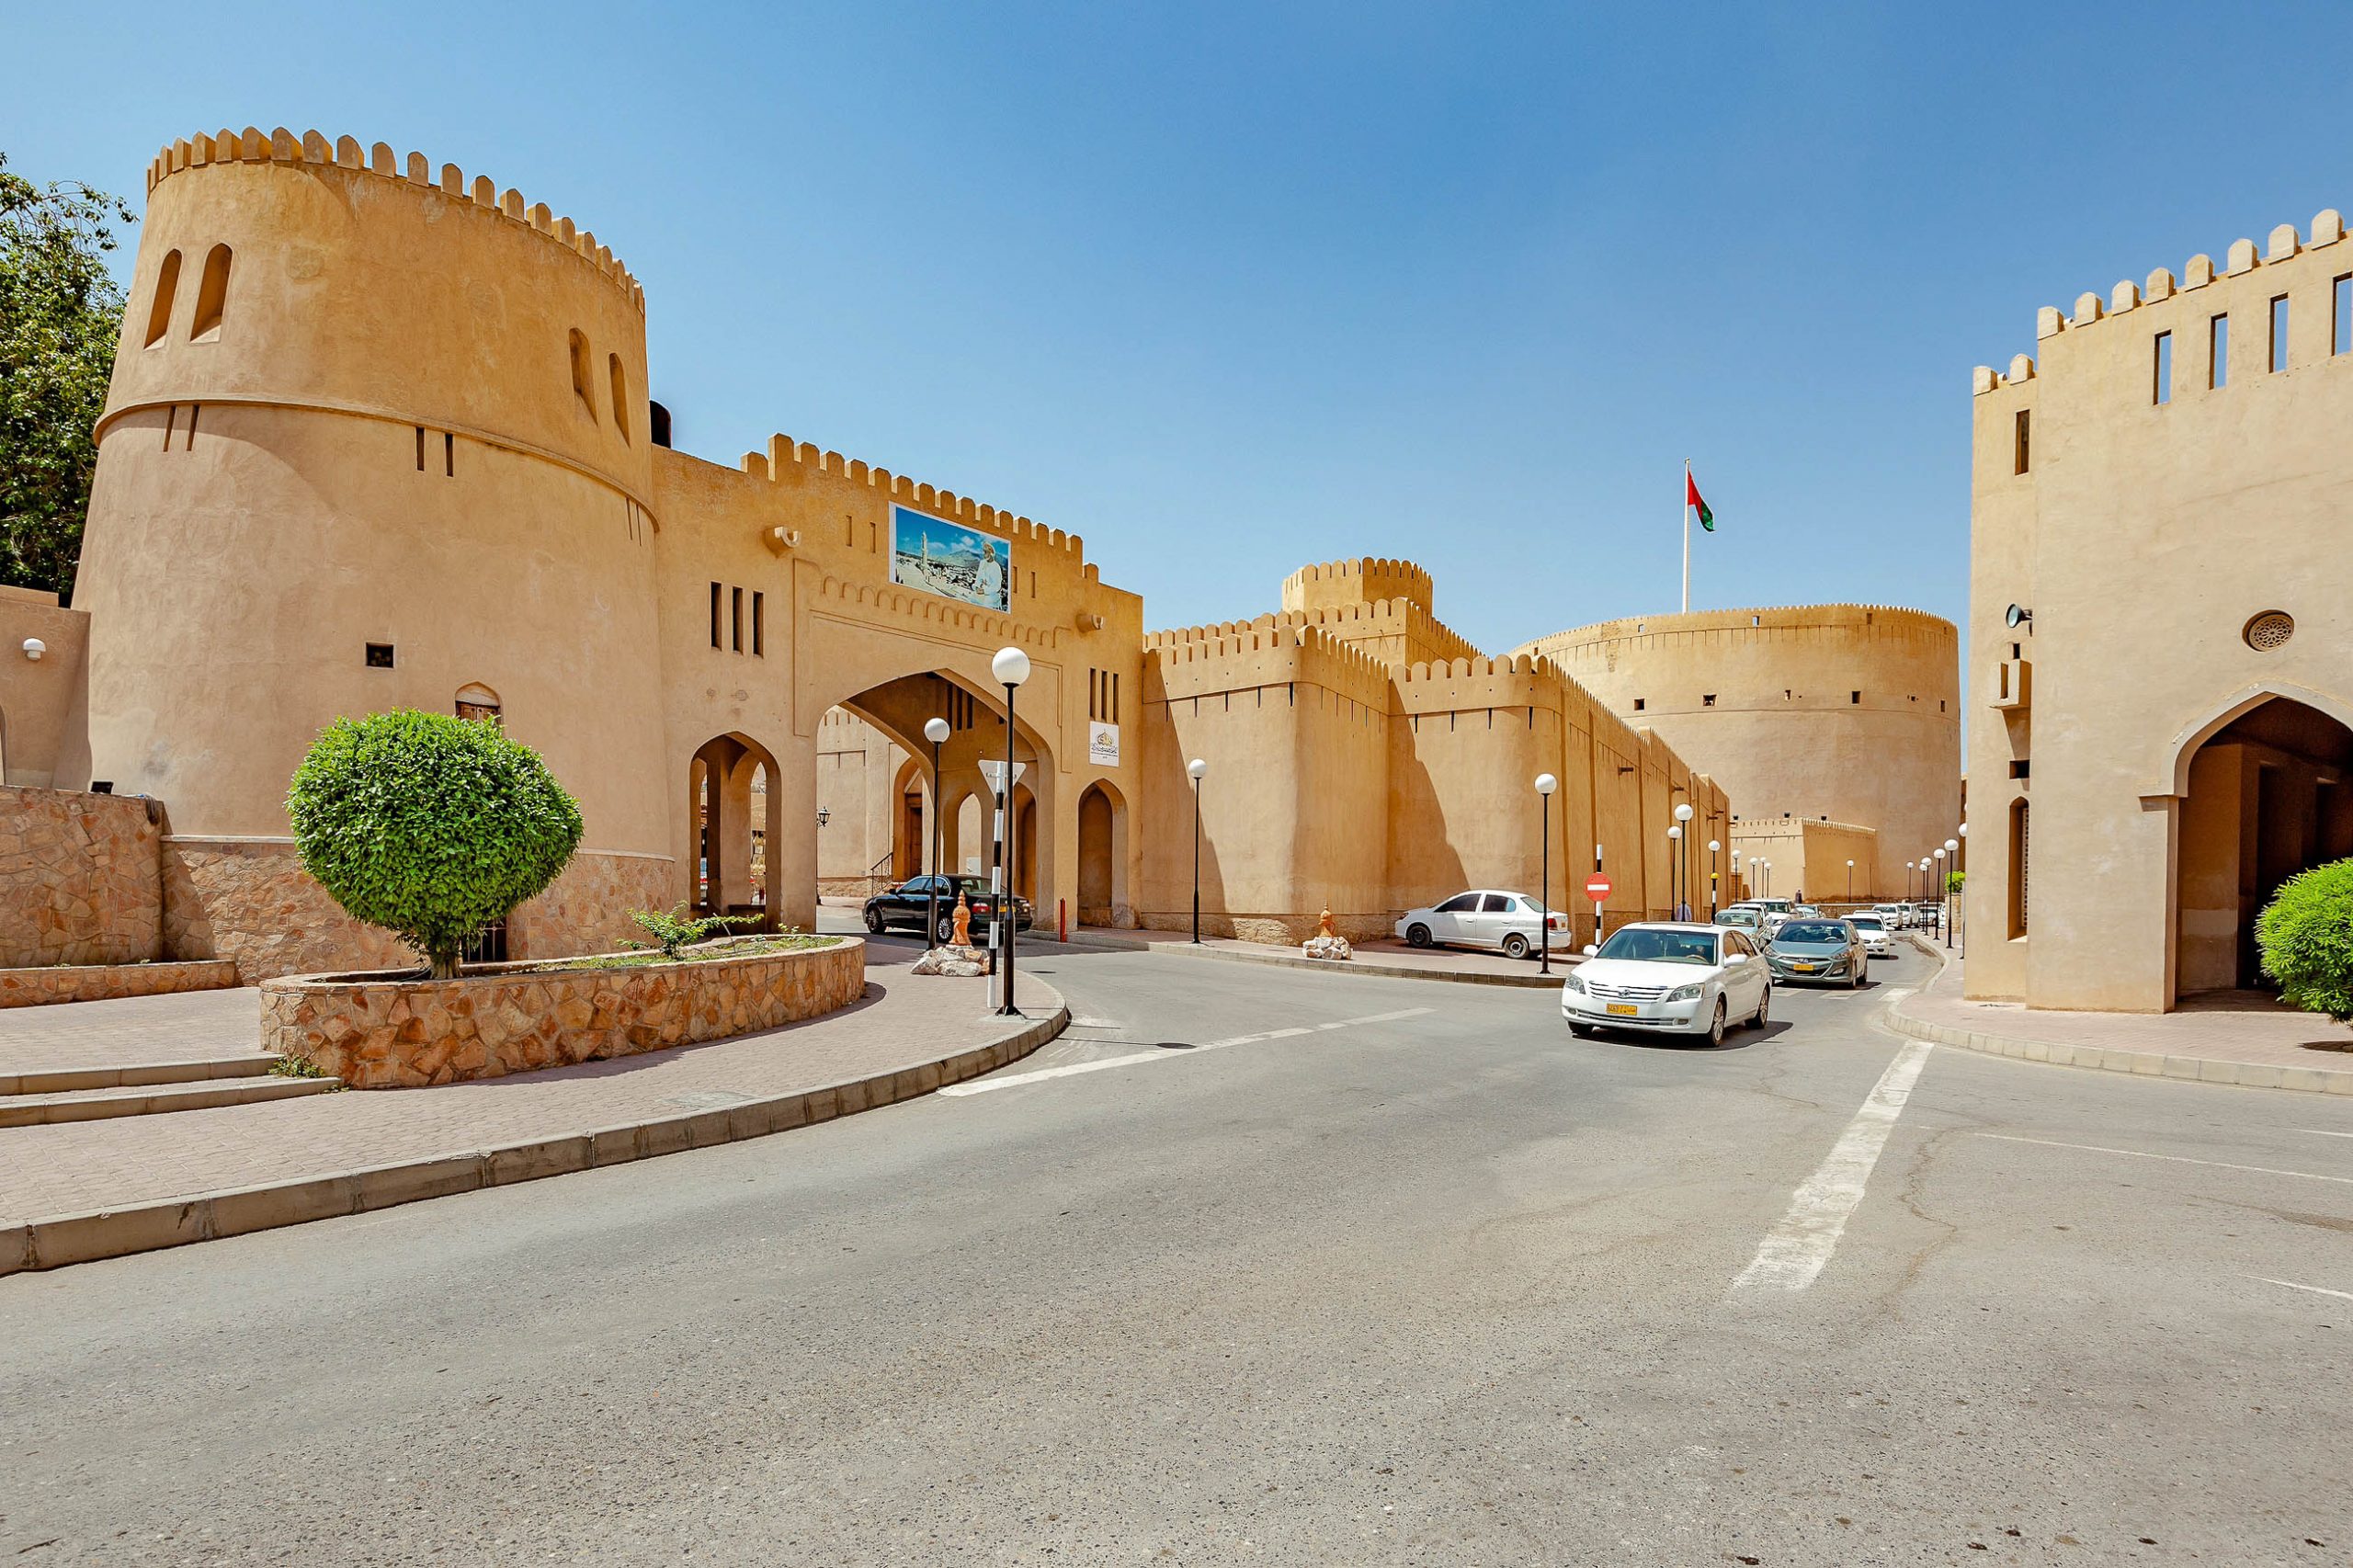 Die beeindruckende Festung von Nizwa im nördlichen Oman zählt zu den meistbesuchten Sehenswürdigkeiten des Oman